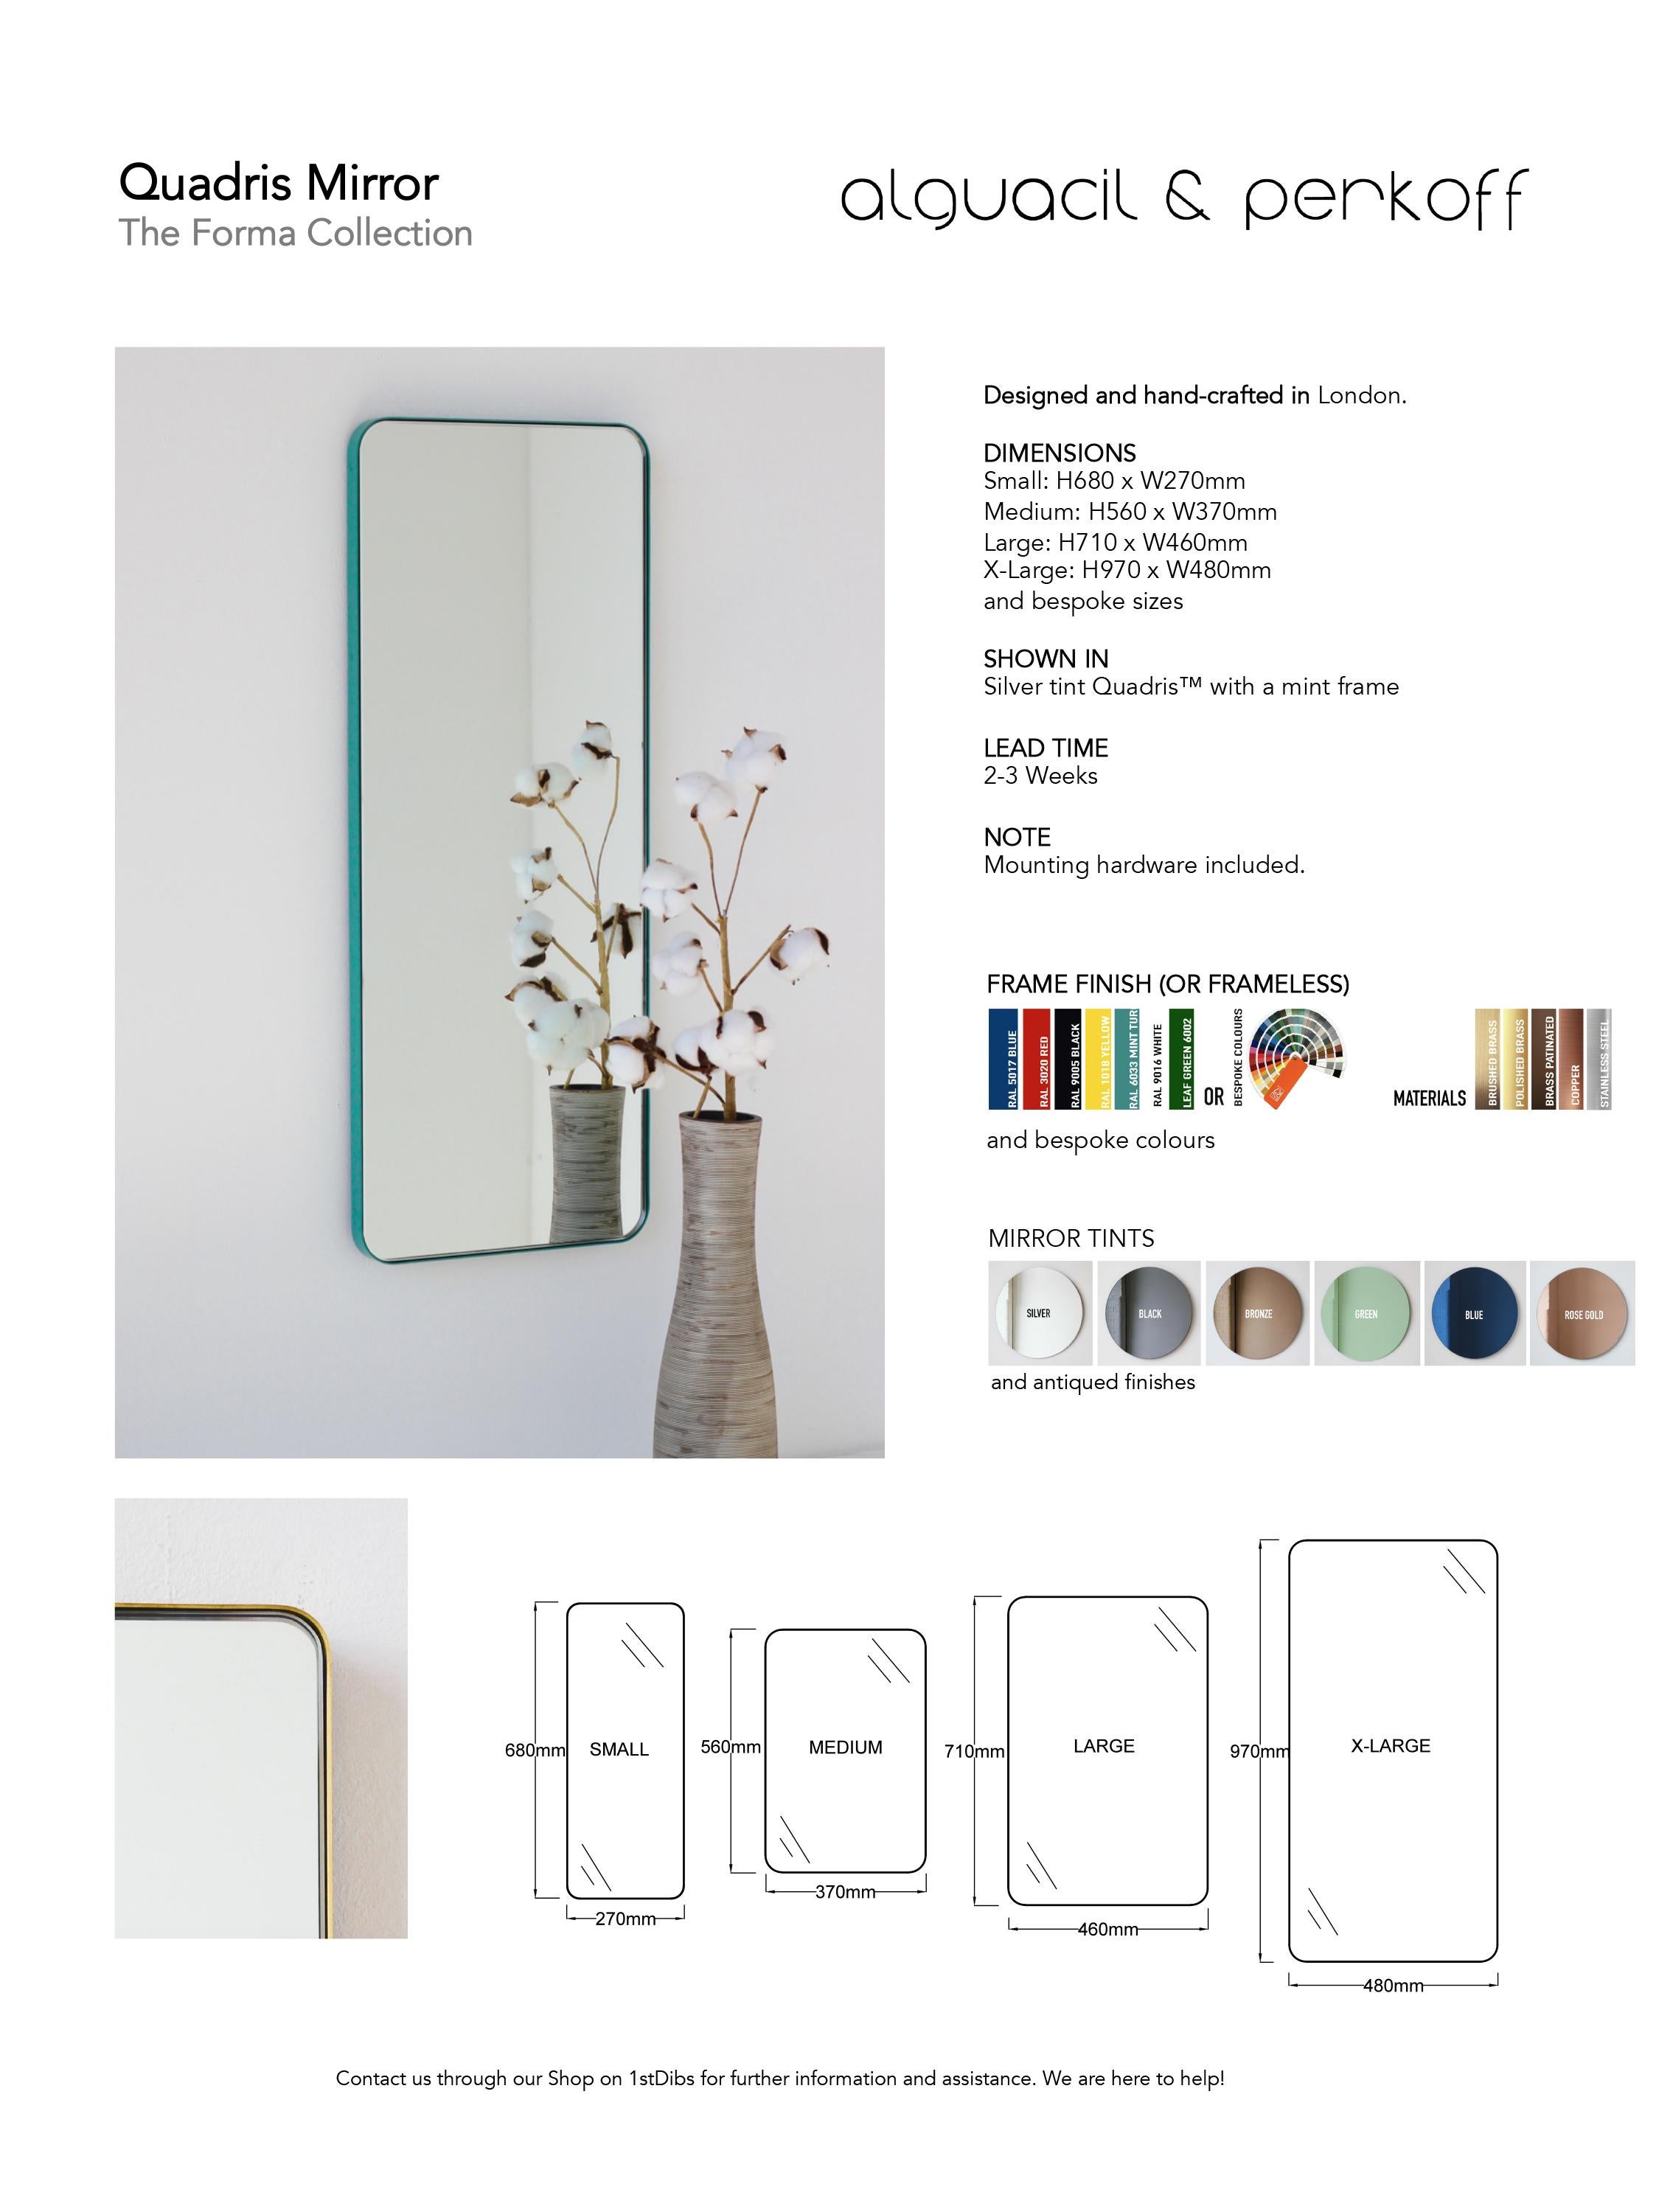 Quadris Rectangular Front Illuminated Contemporary Mirror w Brass Frame, Medium For Sale 3